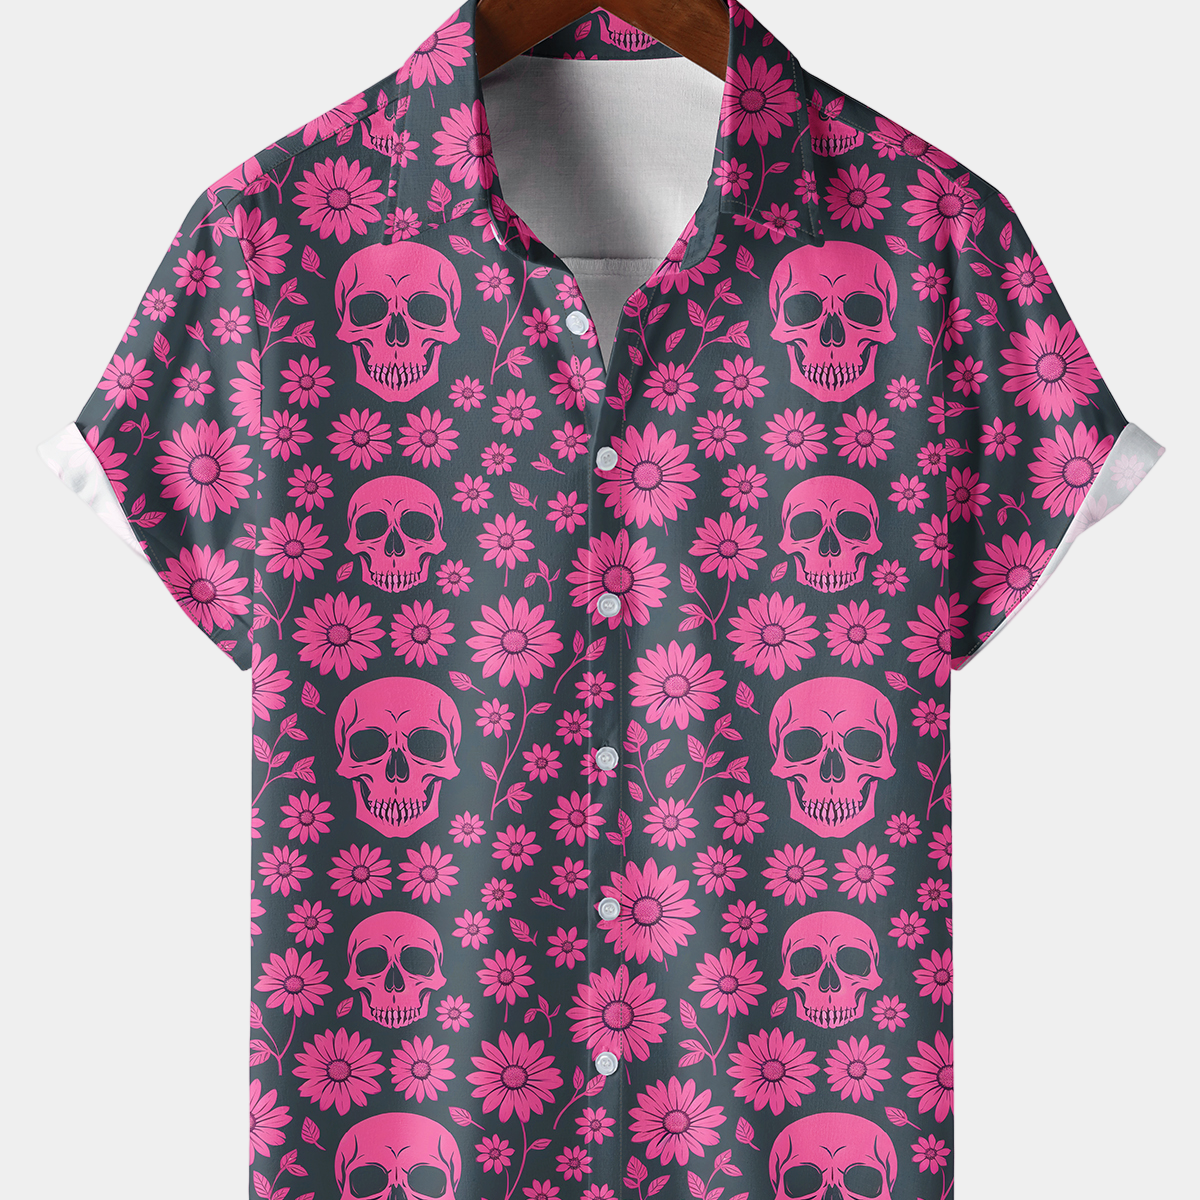 Camisa de manga corta para vacaciones con botones y estampado floral de margaritas y calavera rosa de verano para hombre